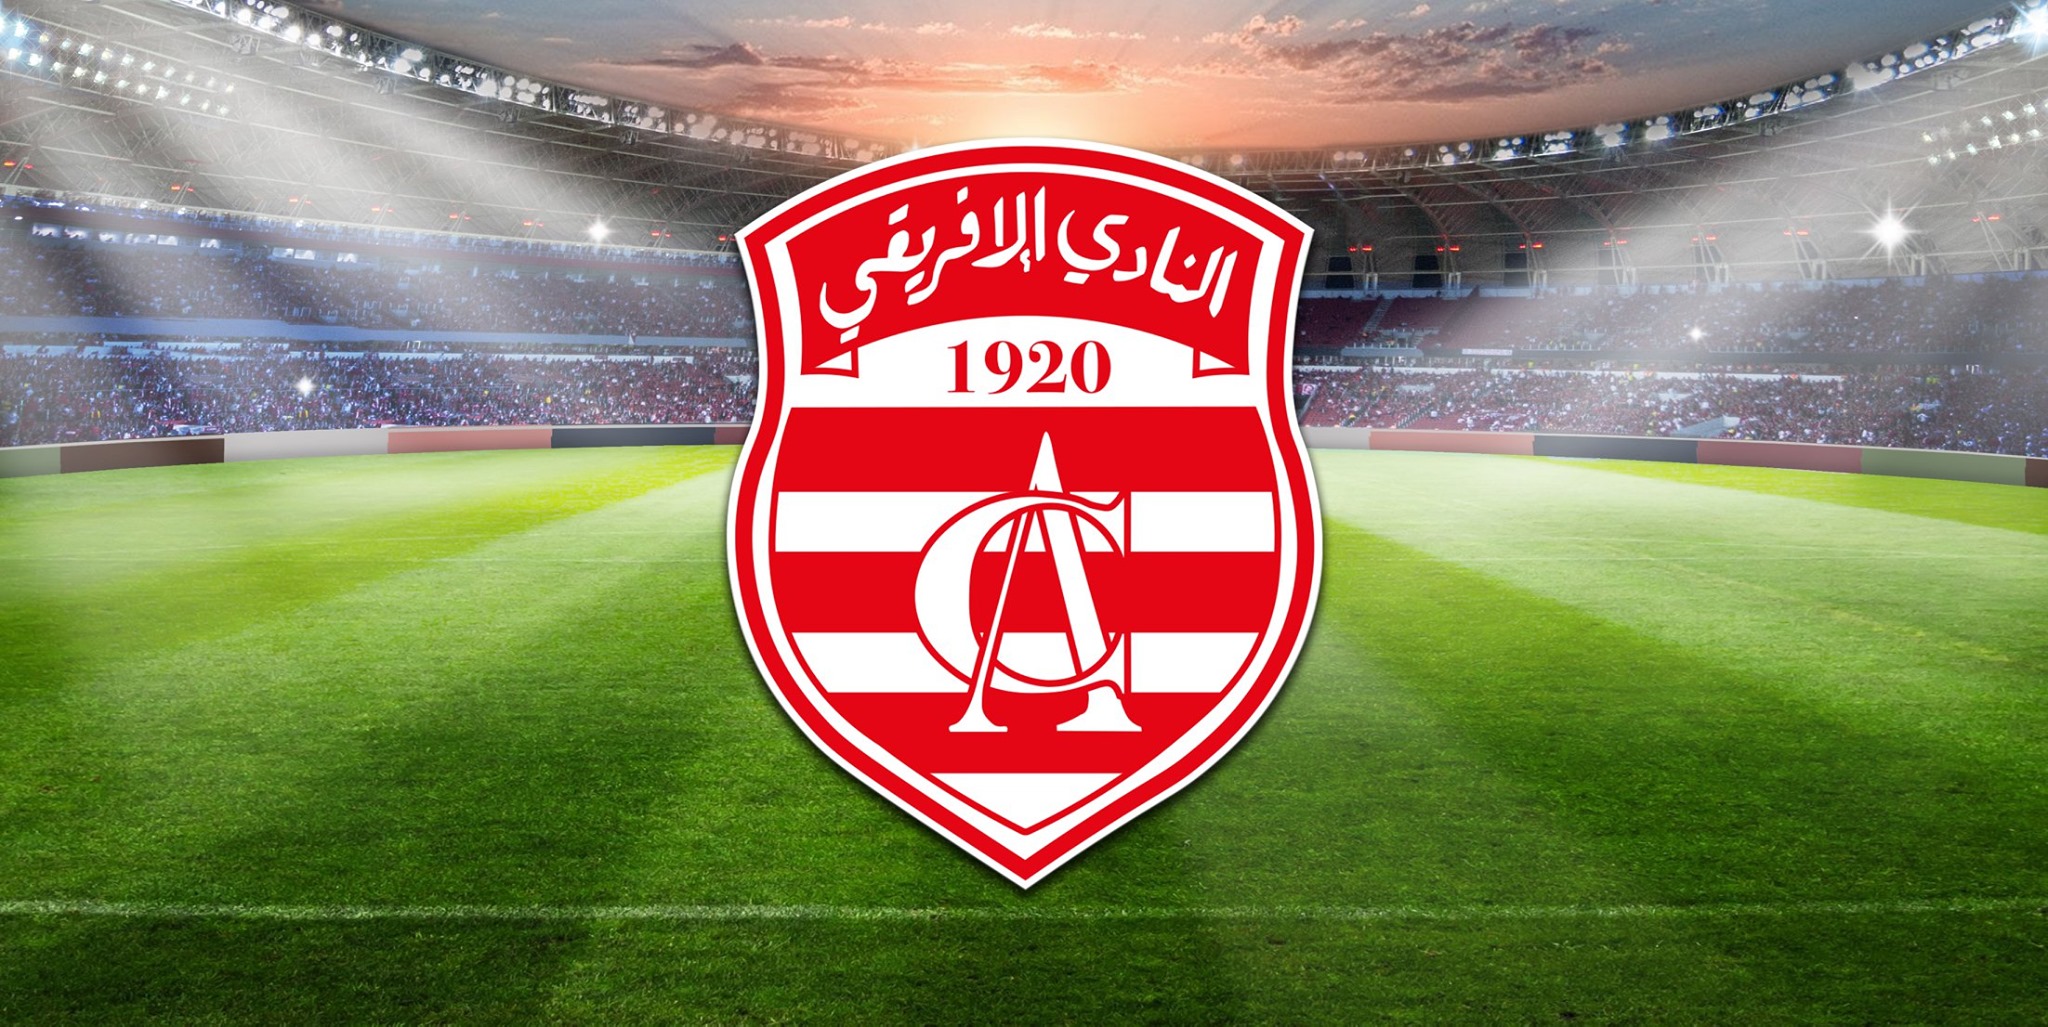  كأس تونس : النادي الافريقي في المربع الذهبي 